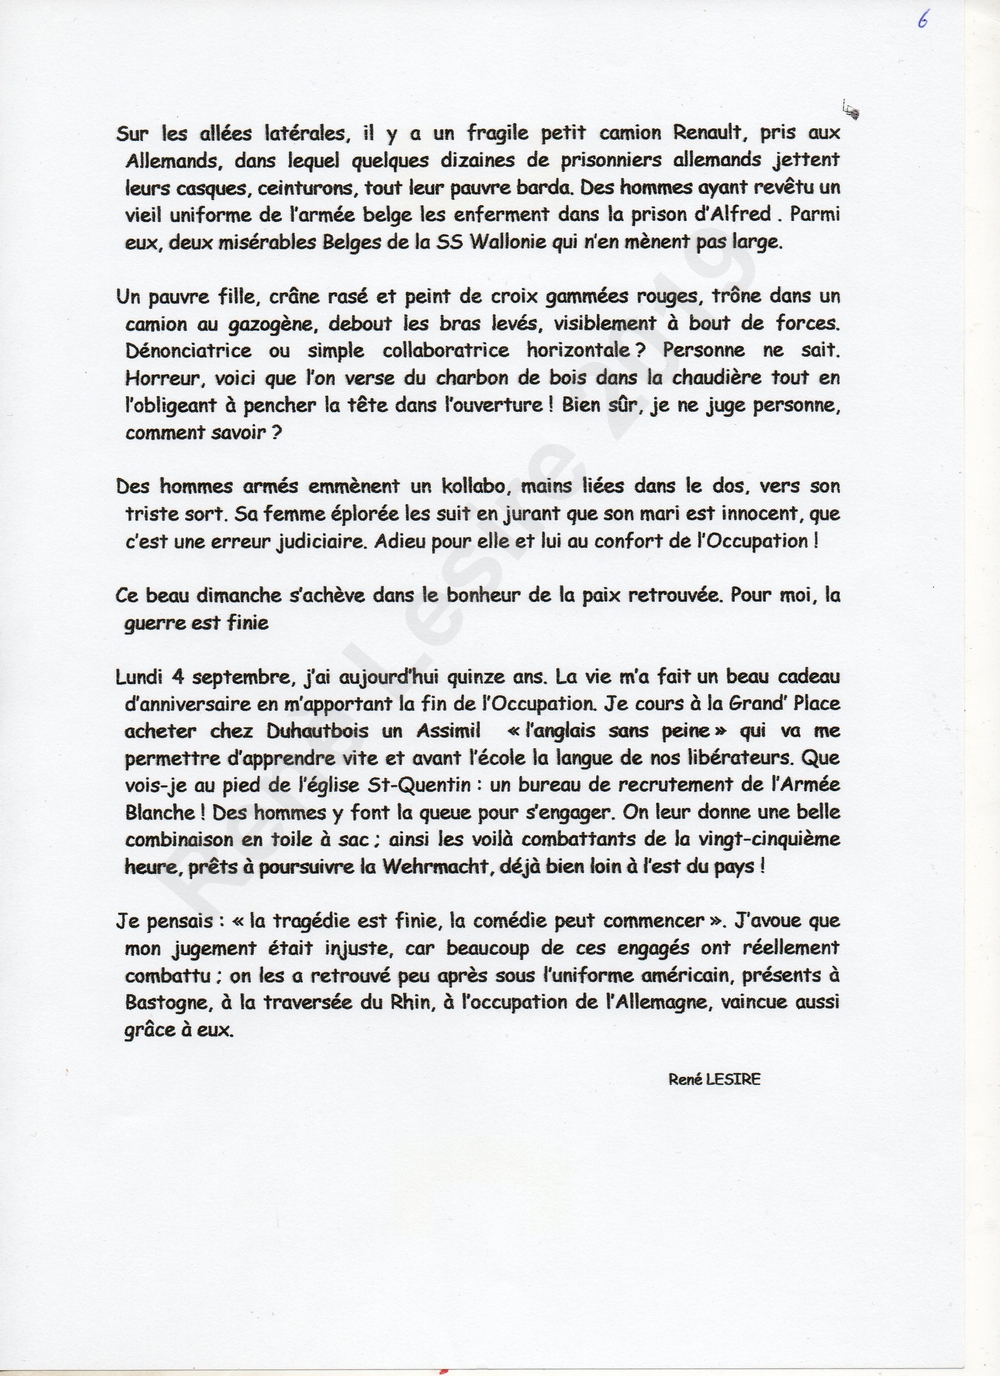 Texte liberation 1944 Renè Lesire